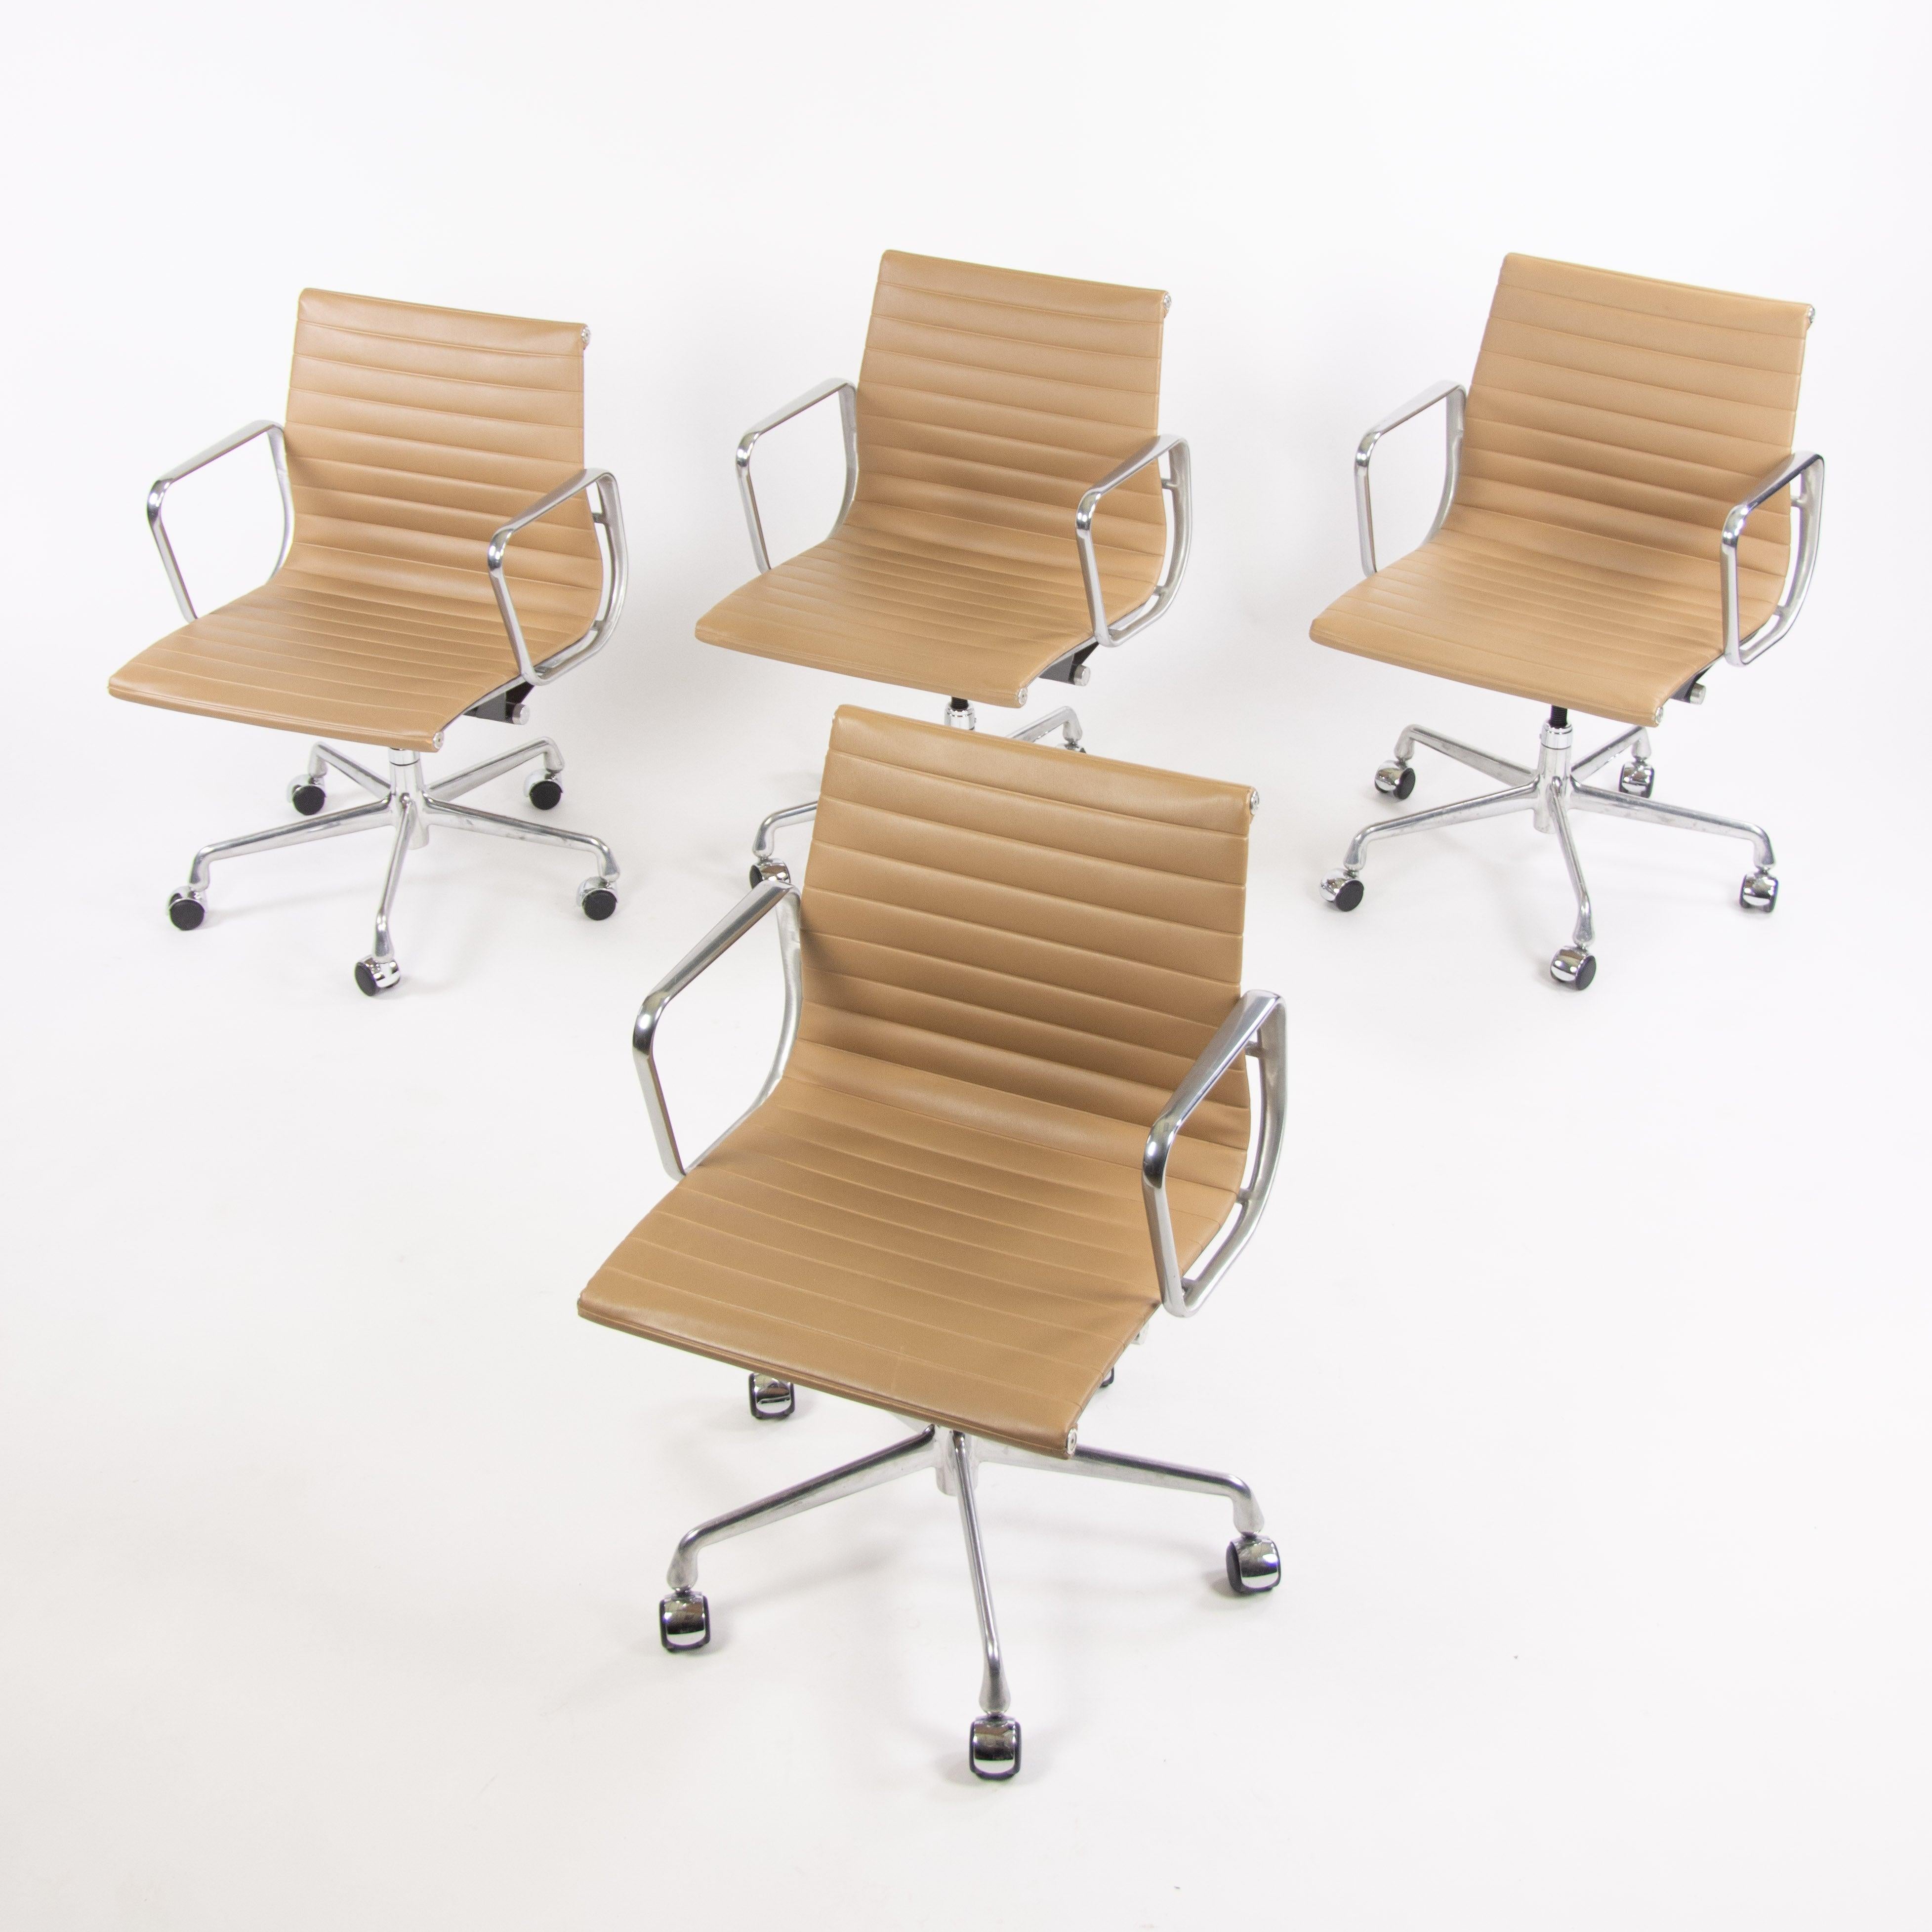 La vente porte sur une seule chaise (plusieurs chaises sont disponibles, mais le prix indiqué est celui de chaque chaise) Herman Miller Eames aluminum group management desk chair in tan naugahyde, le matériau préféré de Charles Eames pour ces